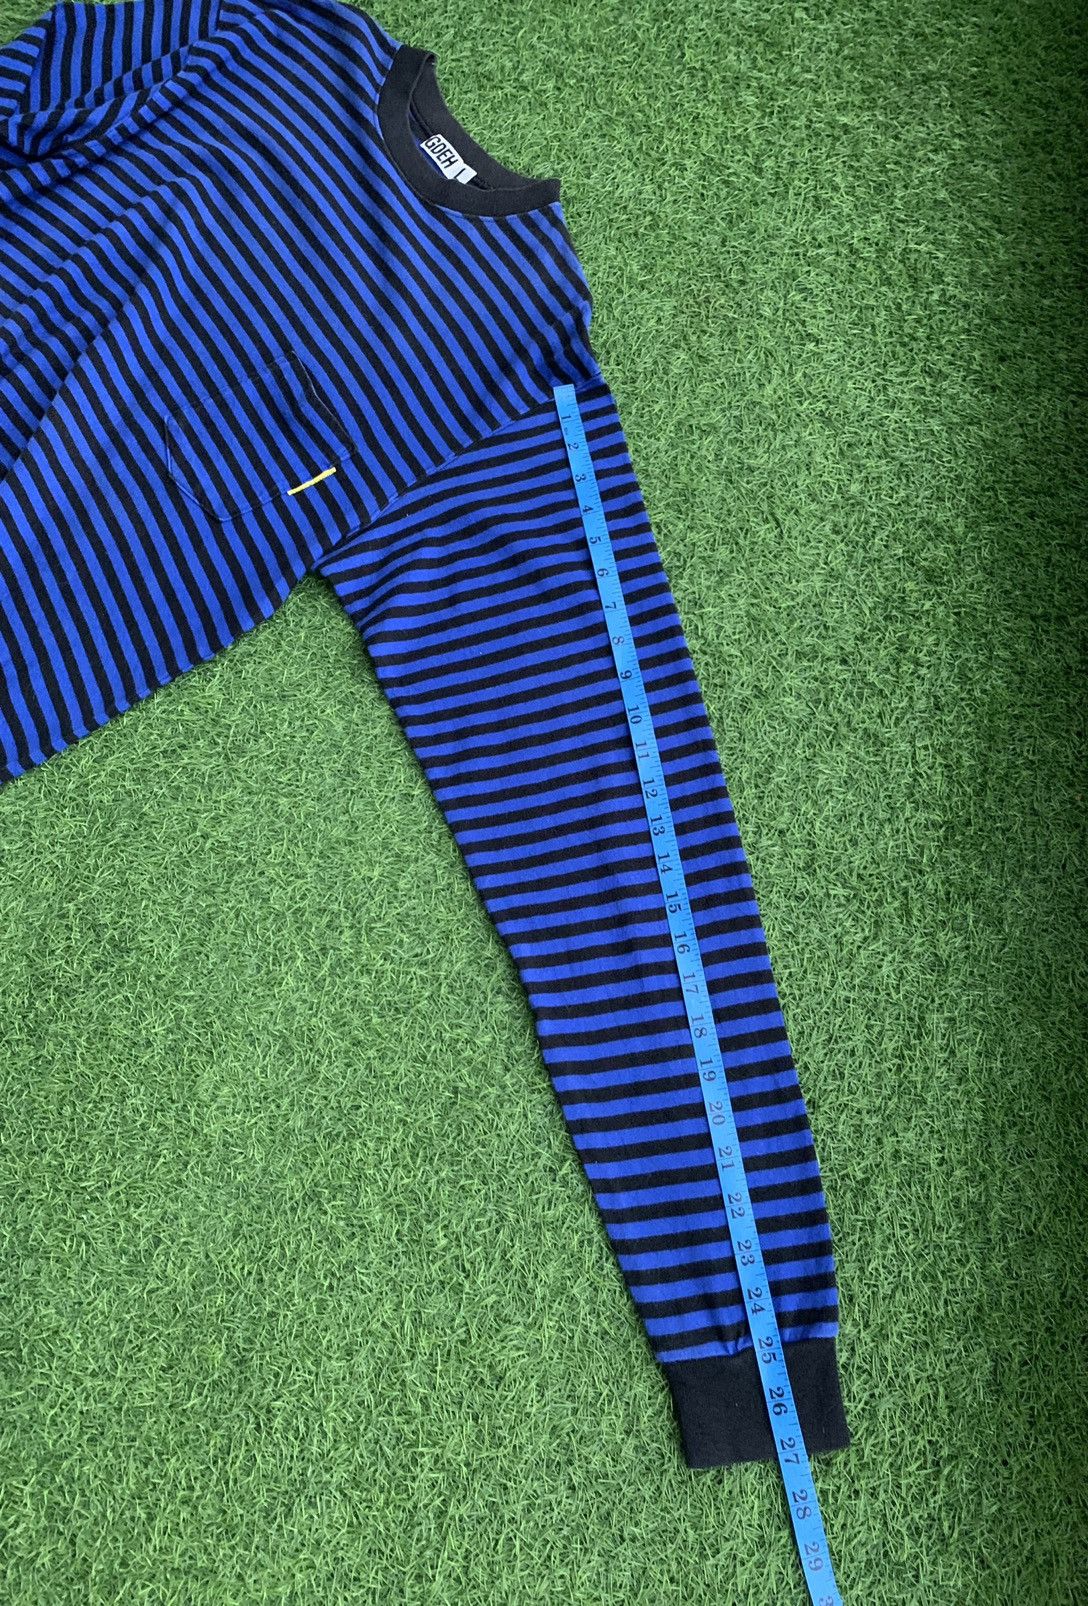 Goodenough Vinateg Good Enough Blue Striped Long Sleeve T-shirts Size US L / EU 52-54 / 3 - 18 Preview